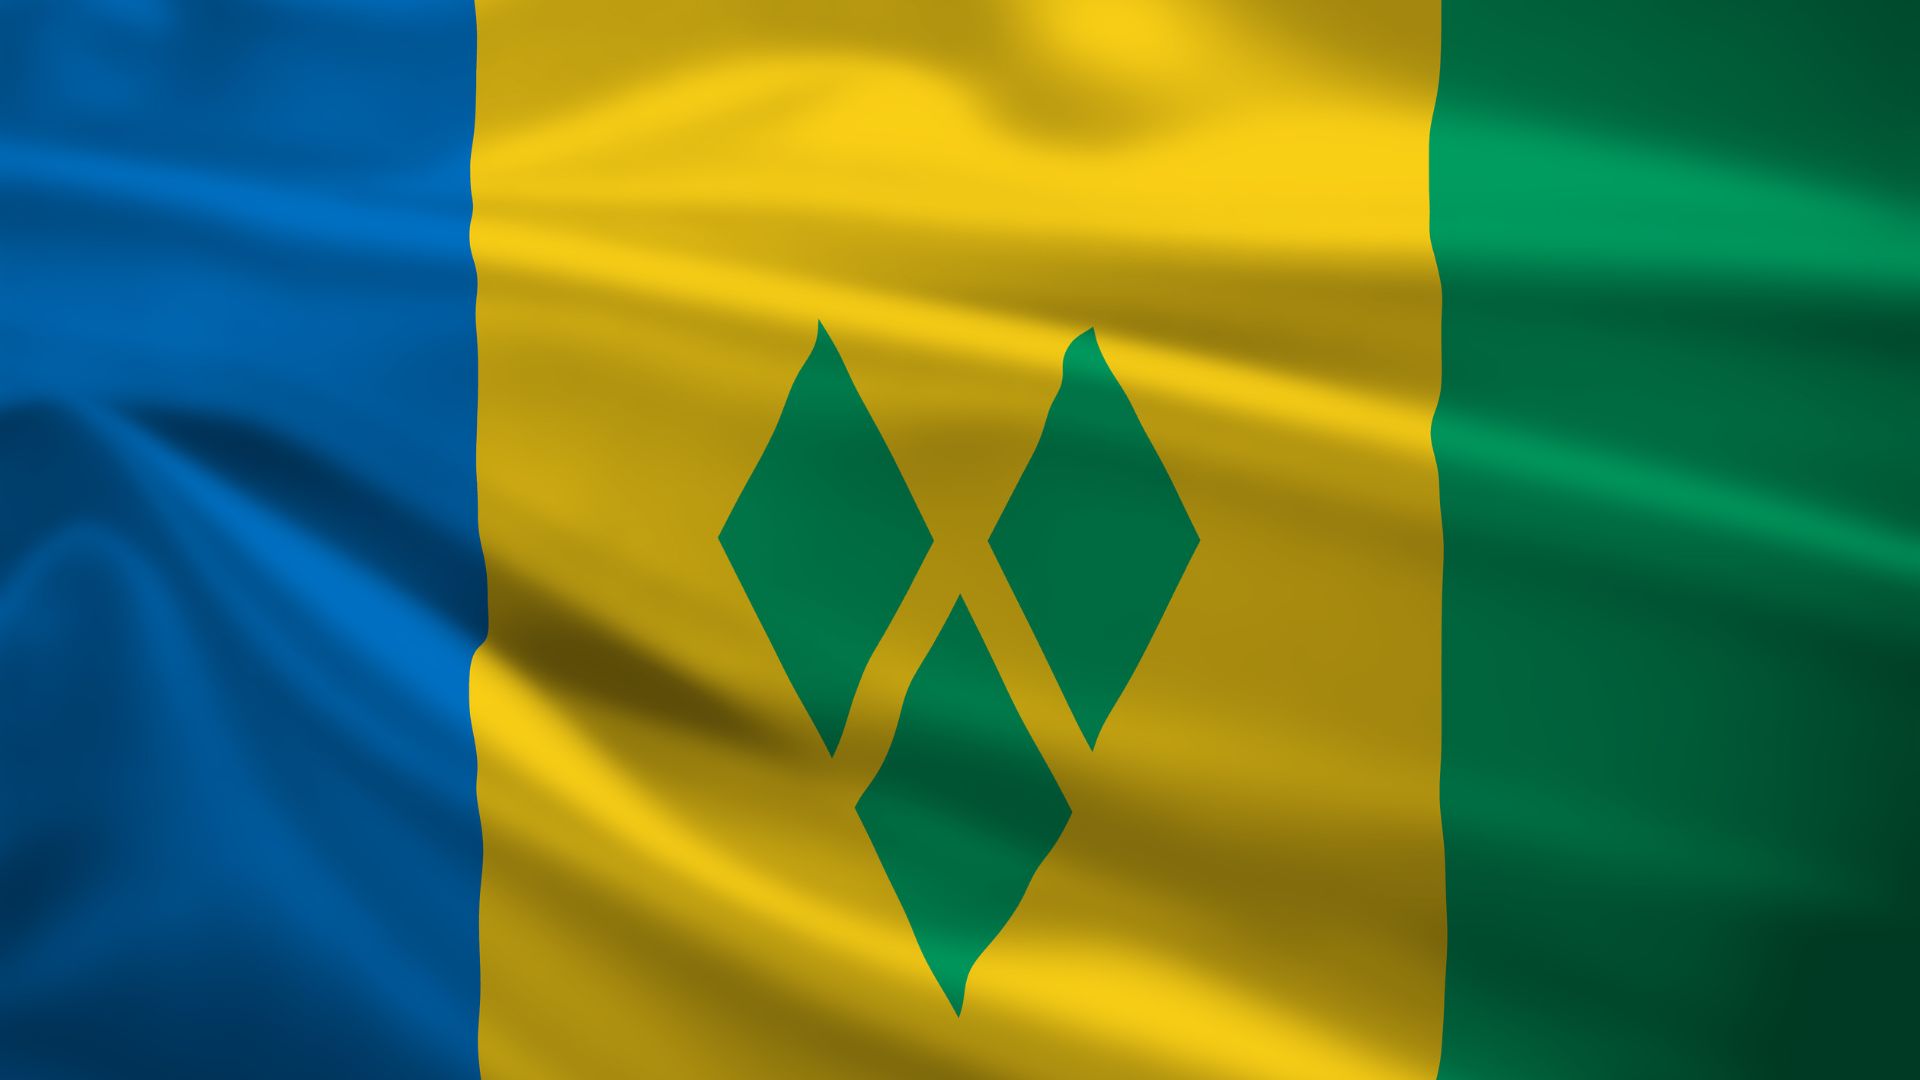 A Bandeira de São Vicente e Granadinas é composta por três listras verticais de cores azul, amarela e verde.